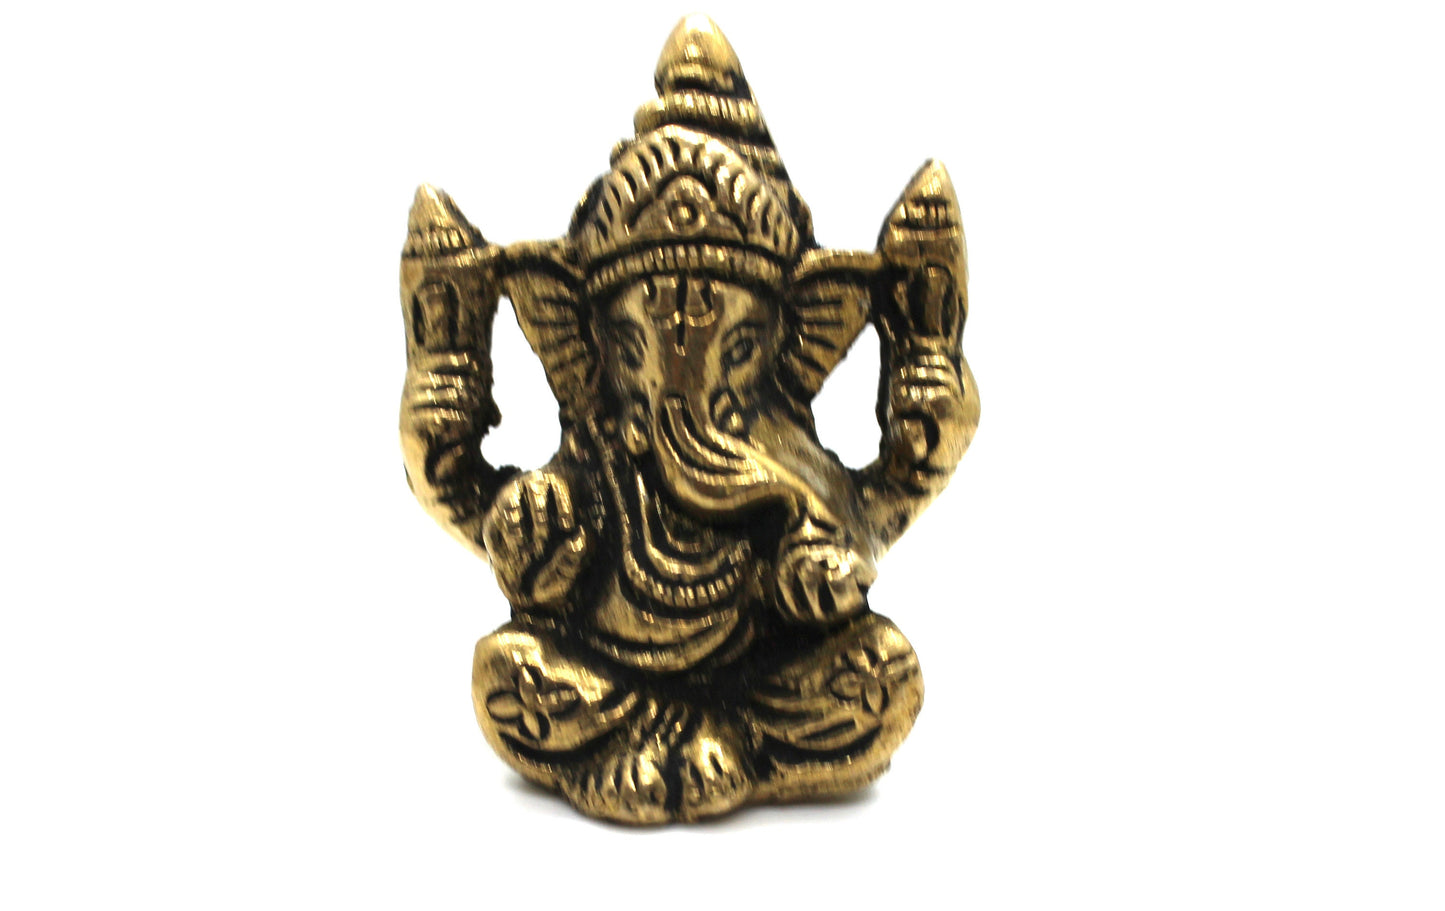 Small Ganesha Statue in Brass, 5.5 CM Brass Ganesh Idol Small, Ganapati Murti, Vinayaka for Hindu God of good luck, success & new beginnings